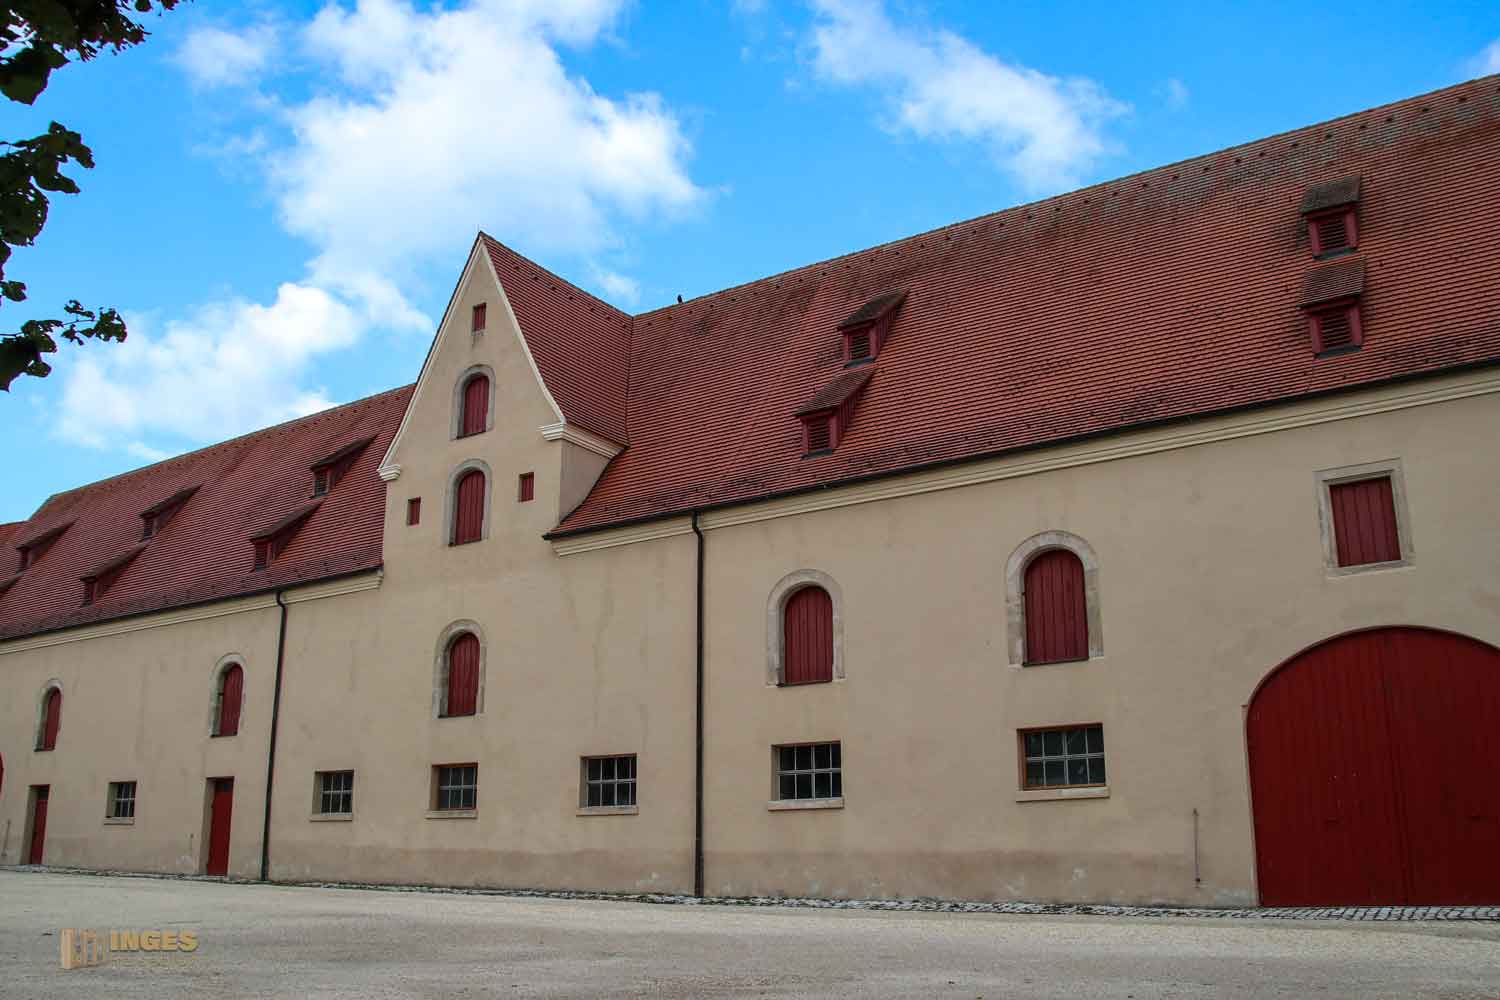 Stallung Schloss ob Ellwangen